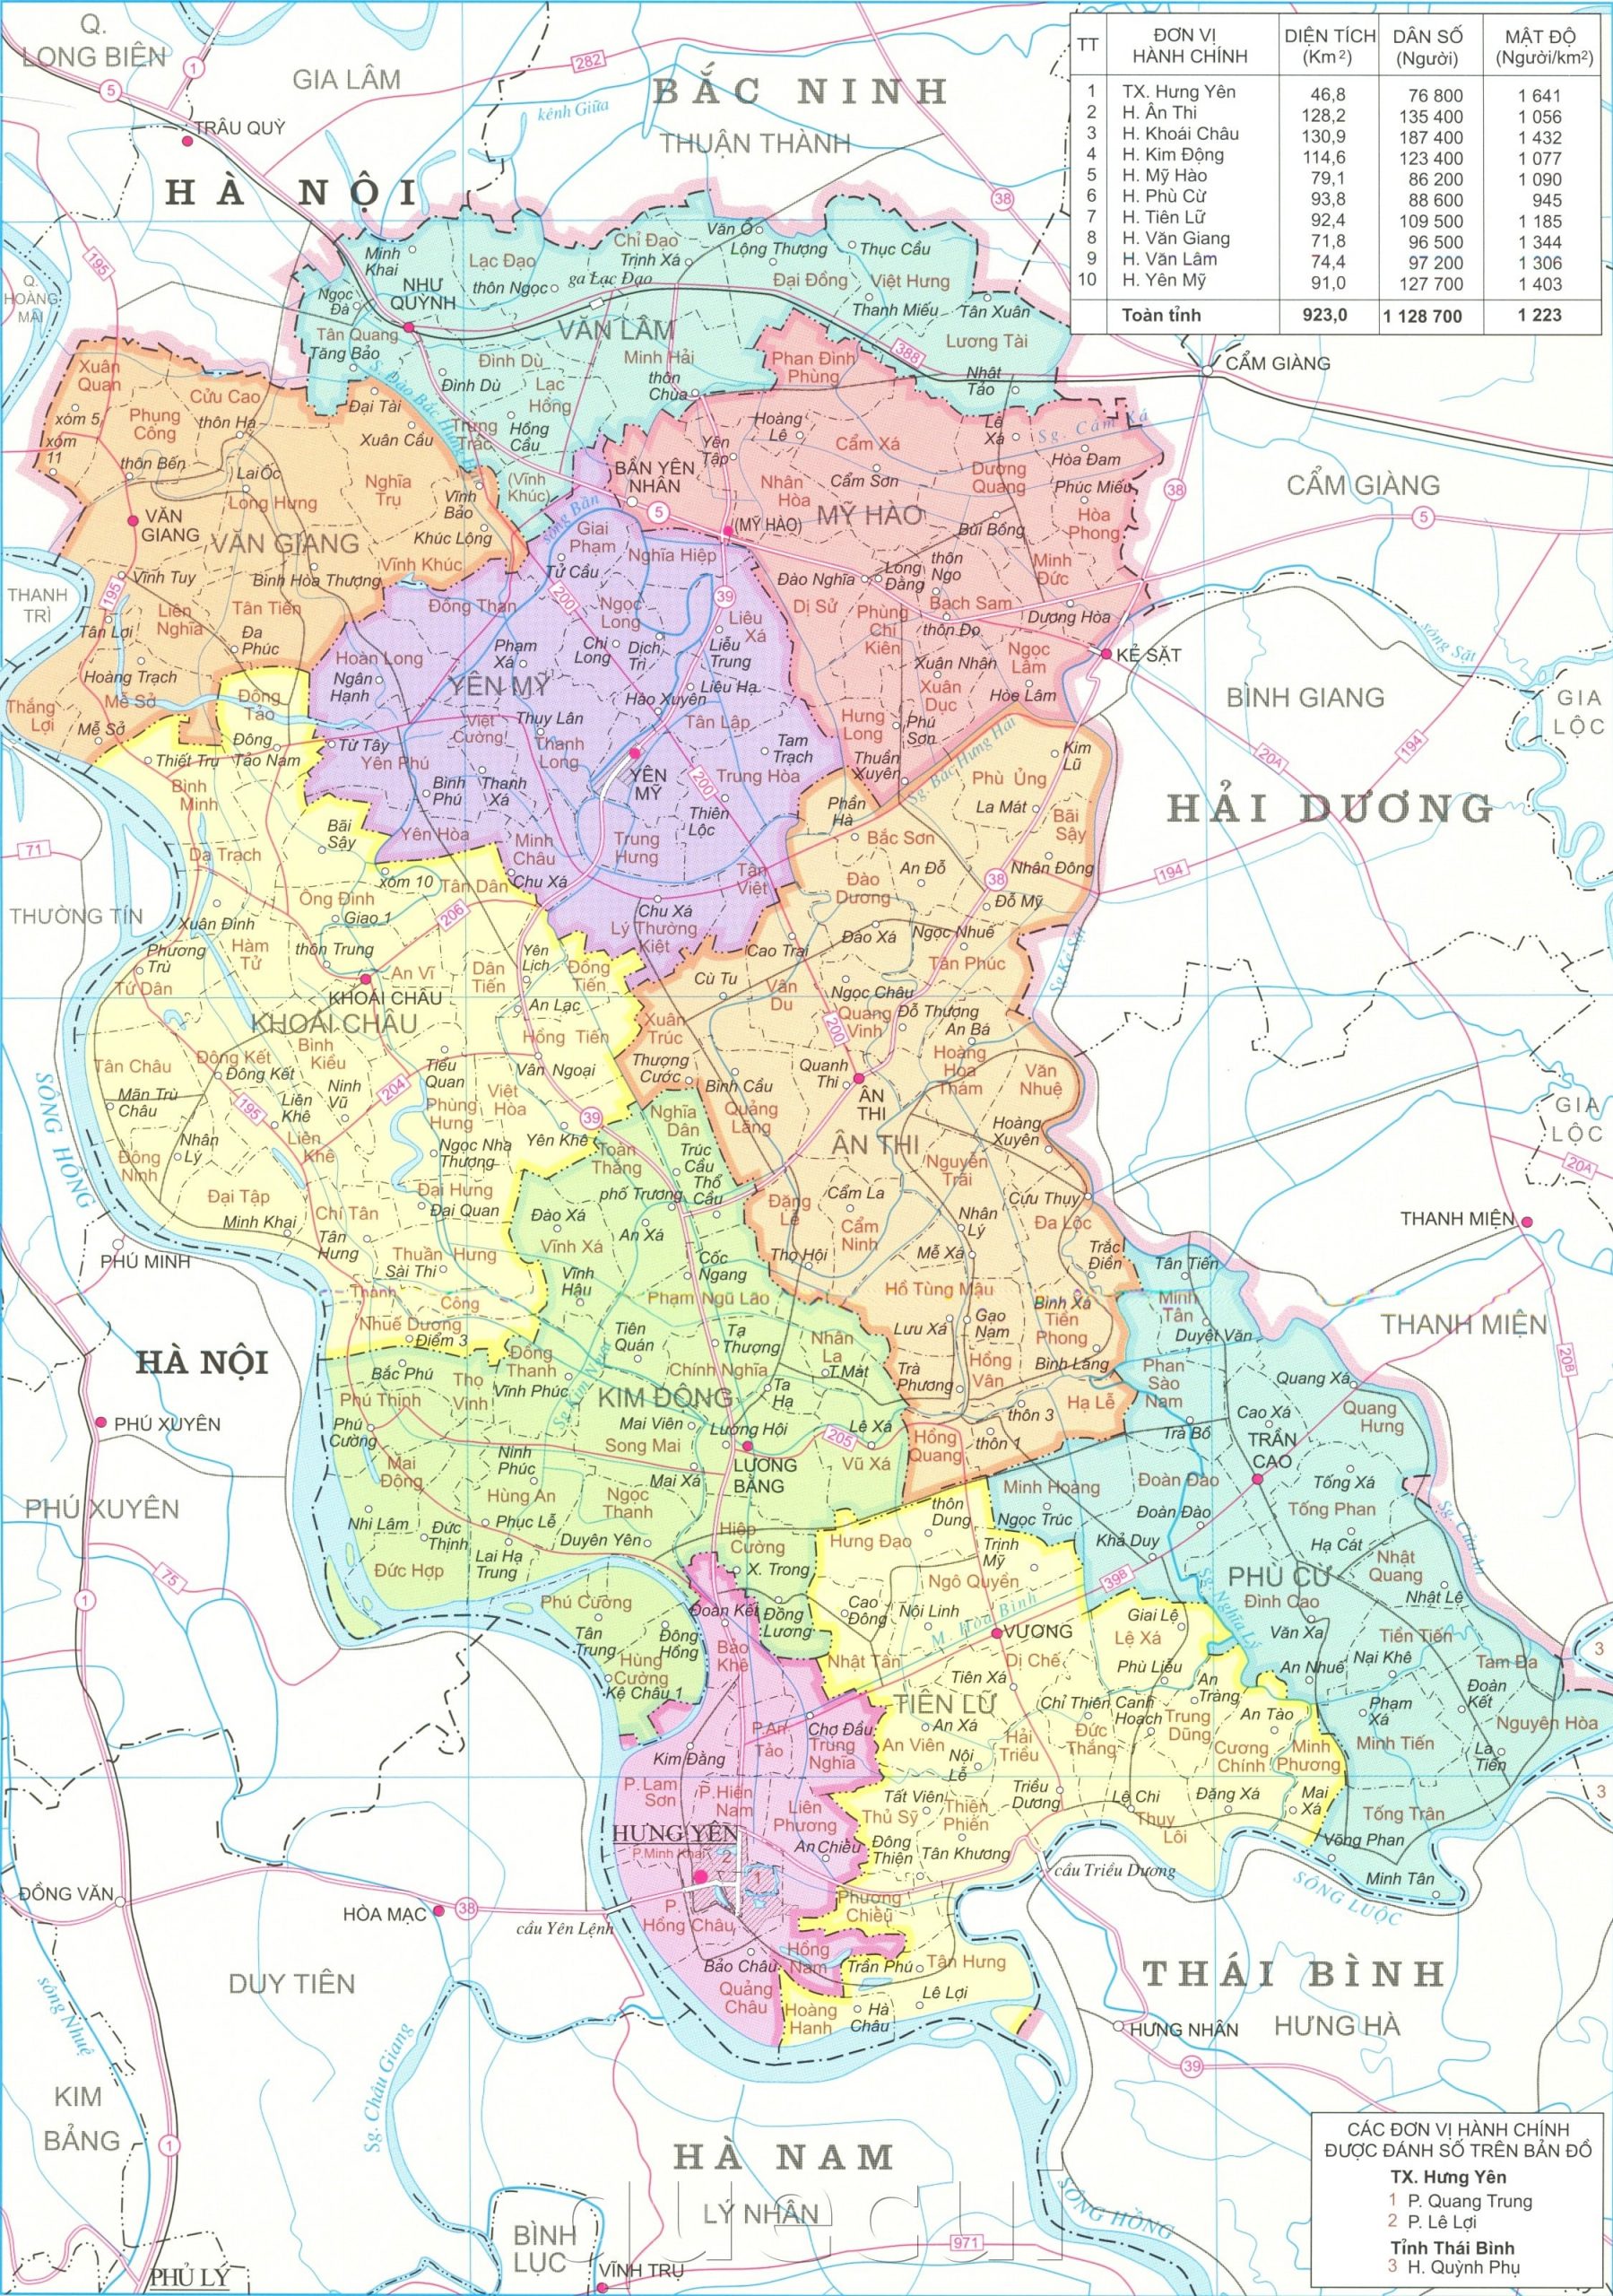 Ban do hanh chinh tinh Hung Yen kho lon nam 2022 min scaled - Bản đồ các tỉnh vùng Đồng bằng Sông Hồng năm 2022